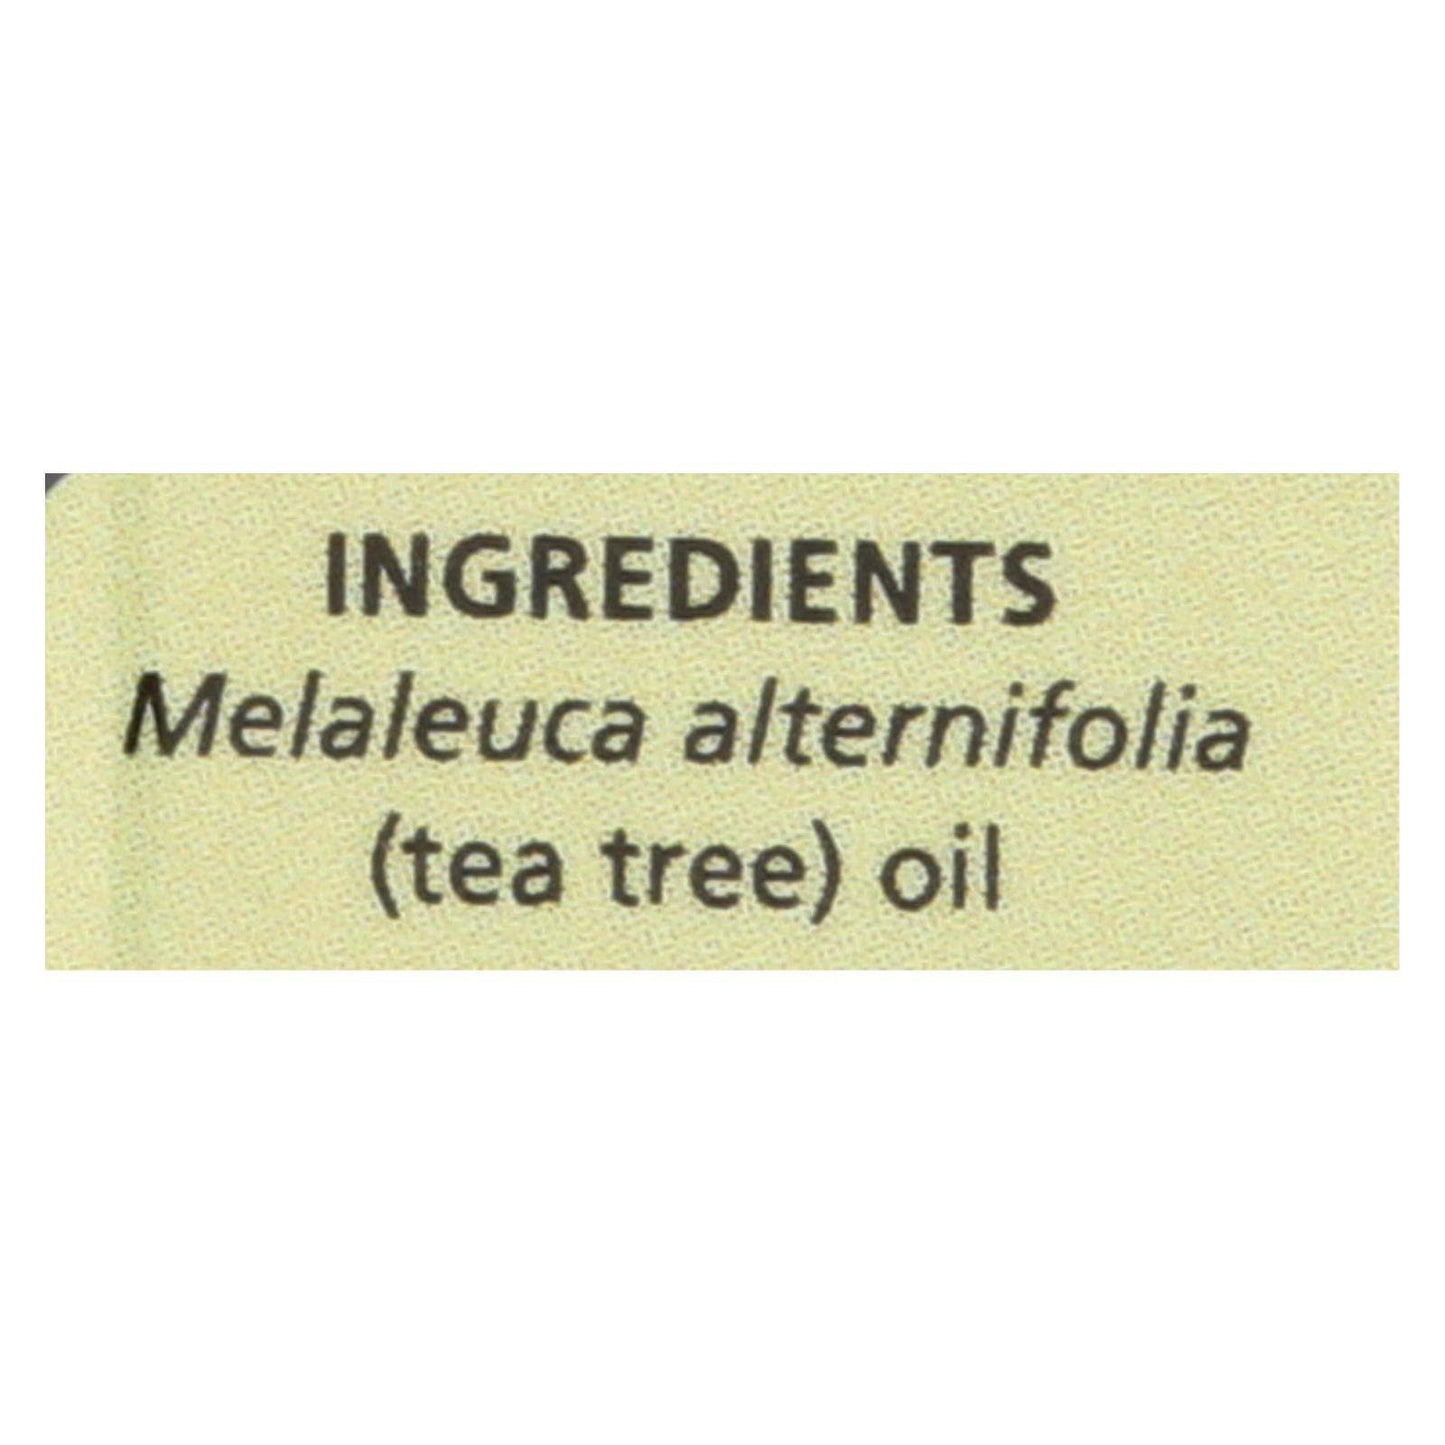 Pure Essential Oil - Tea Tree